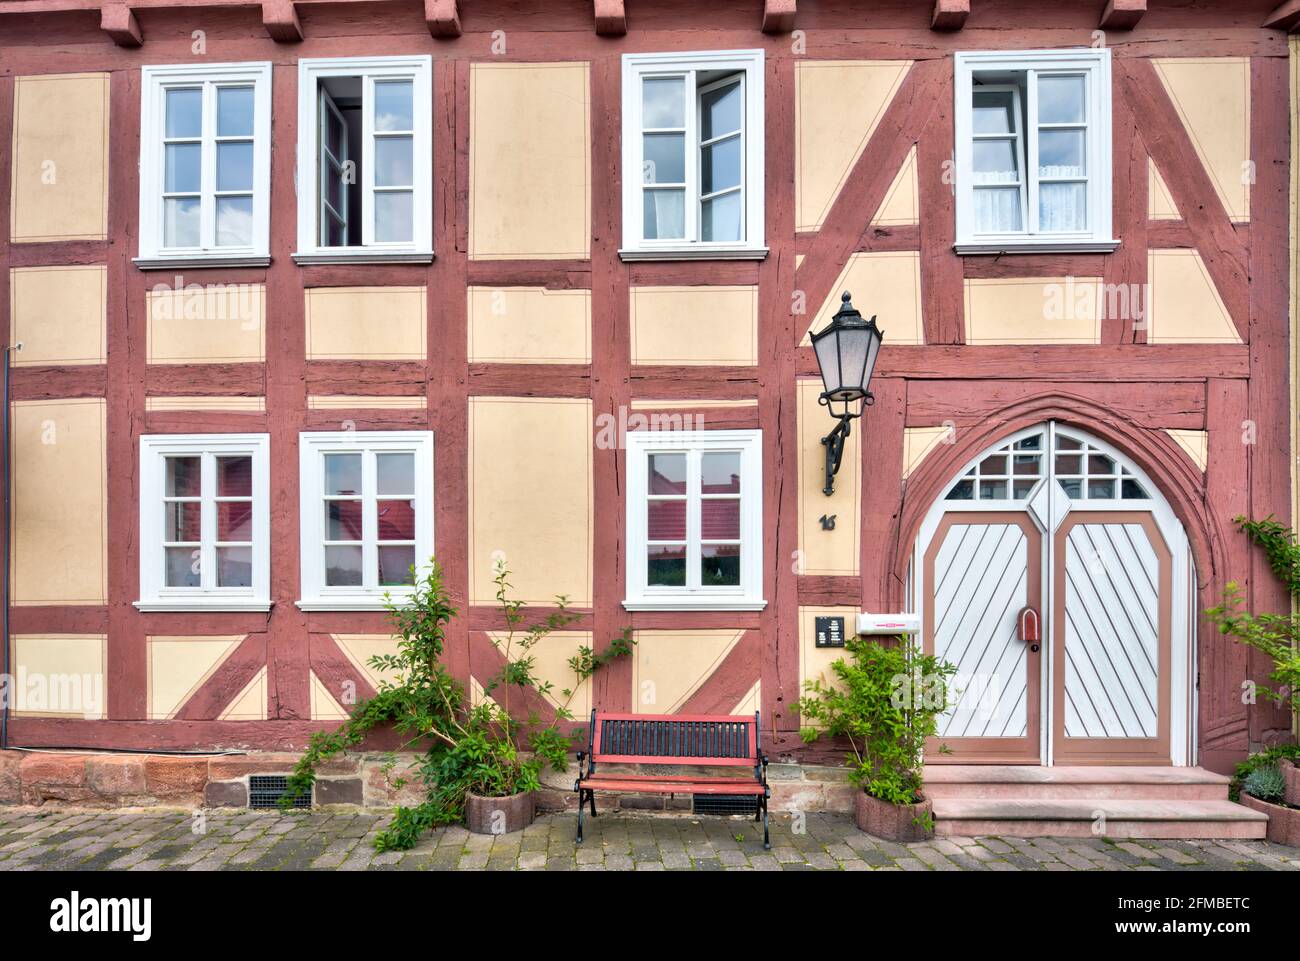 Maison à colombages, porte d'entrée, fenêtre, à colombages, façade de maison, Été, Rotenburg an der Fulda, Hesssen, Allemagne, Europe Banque D'Images